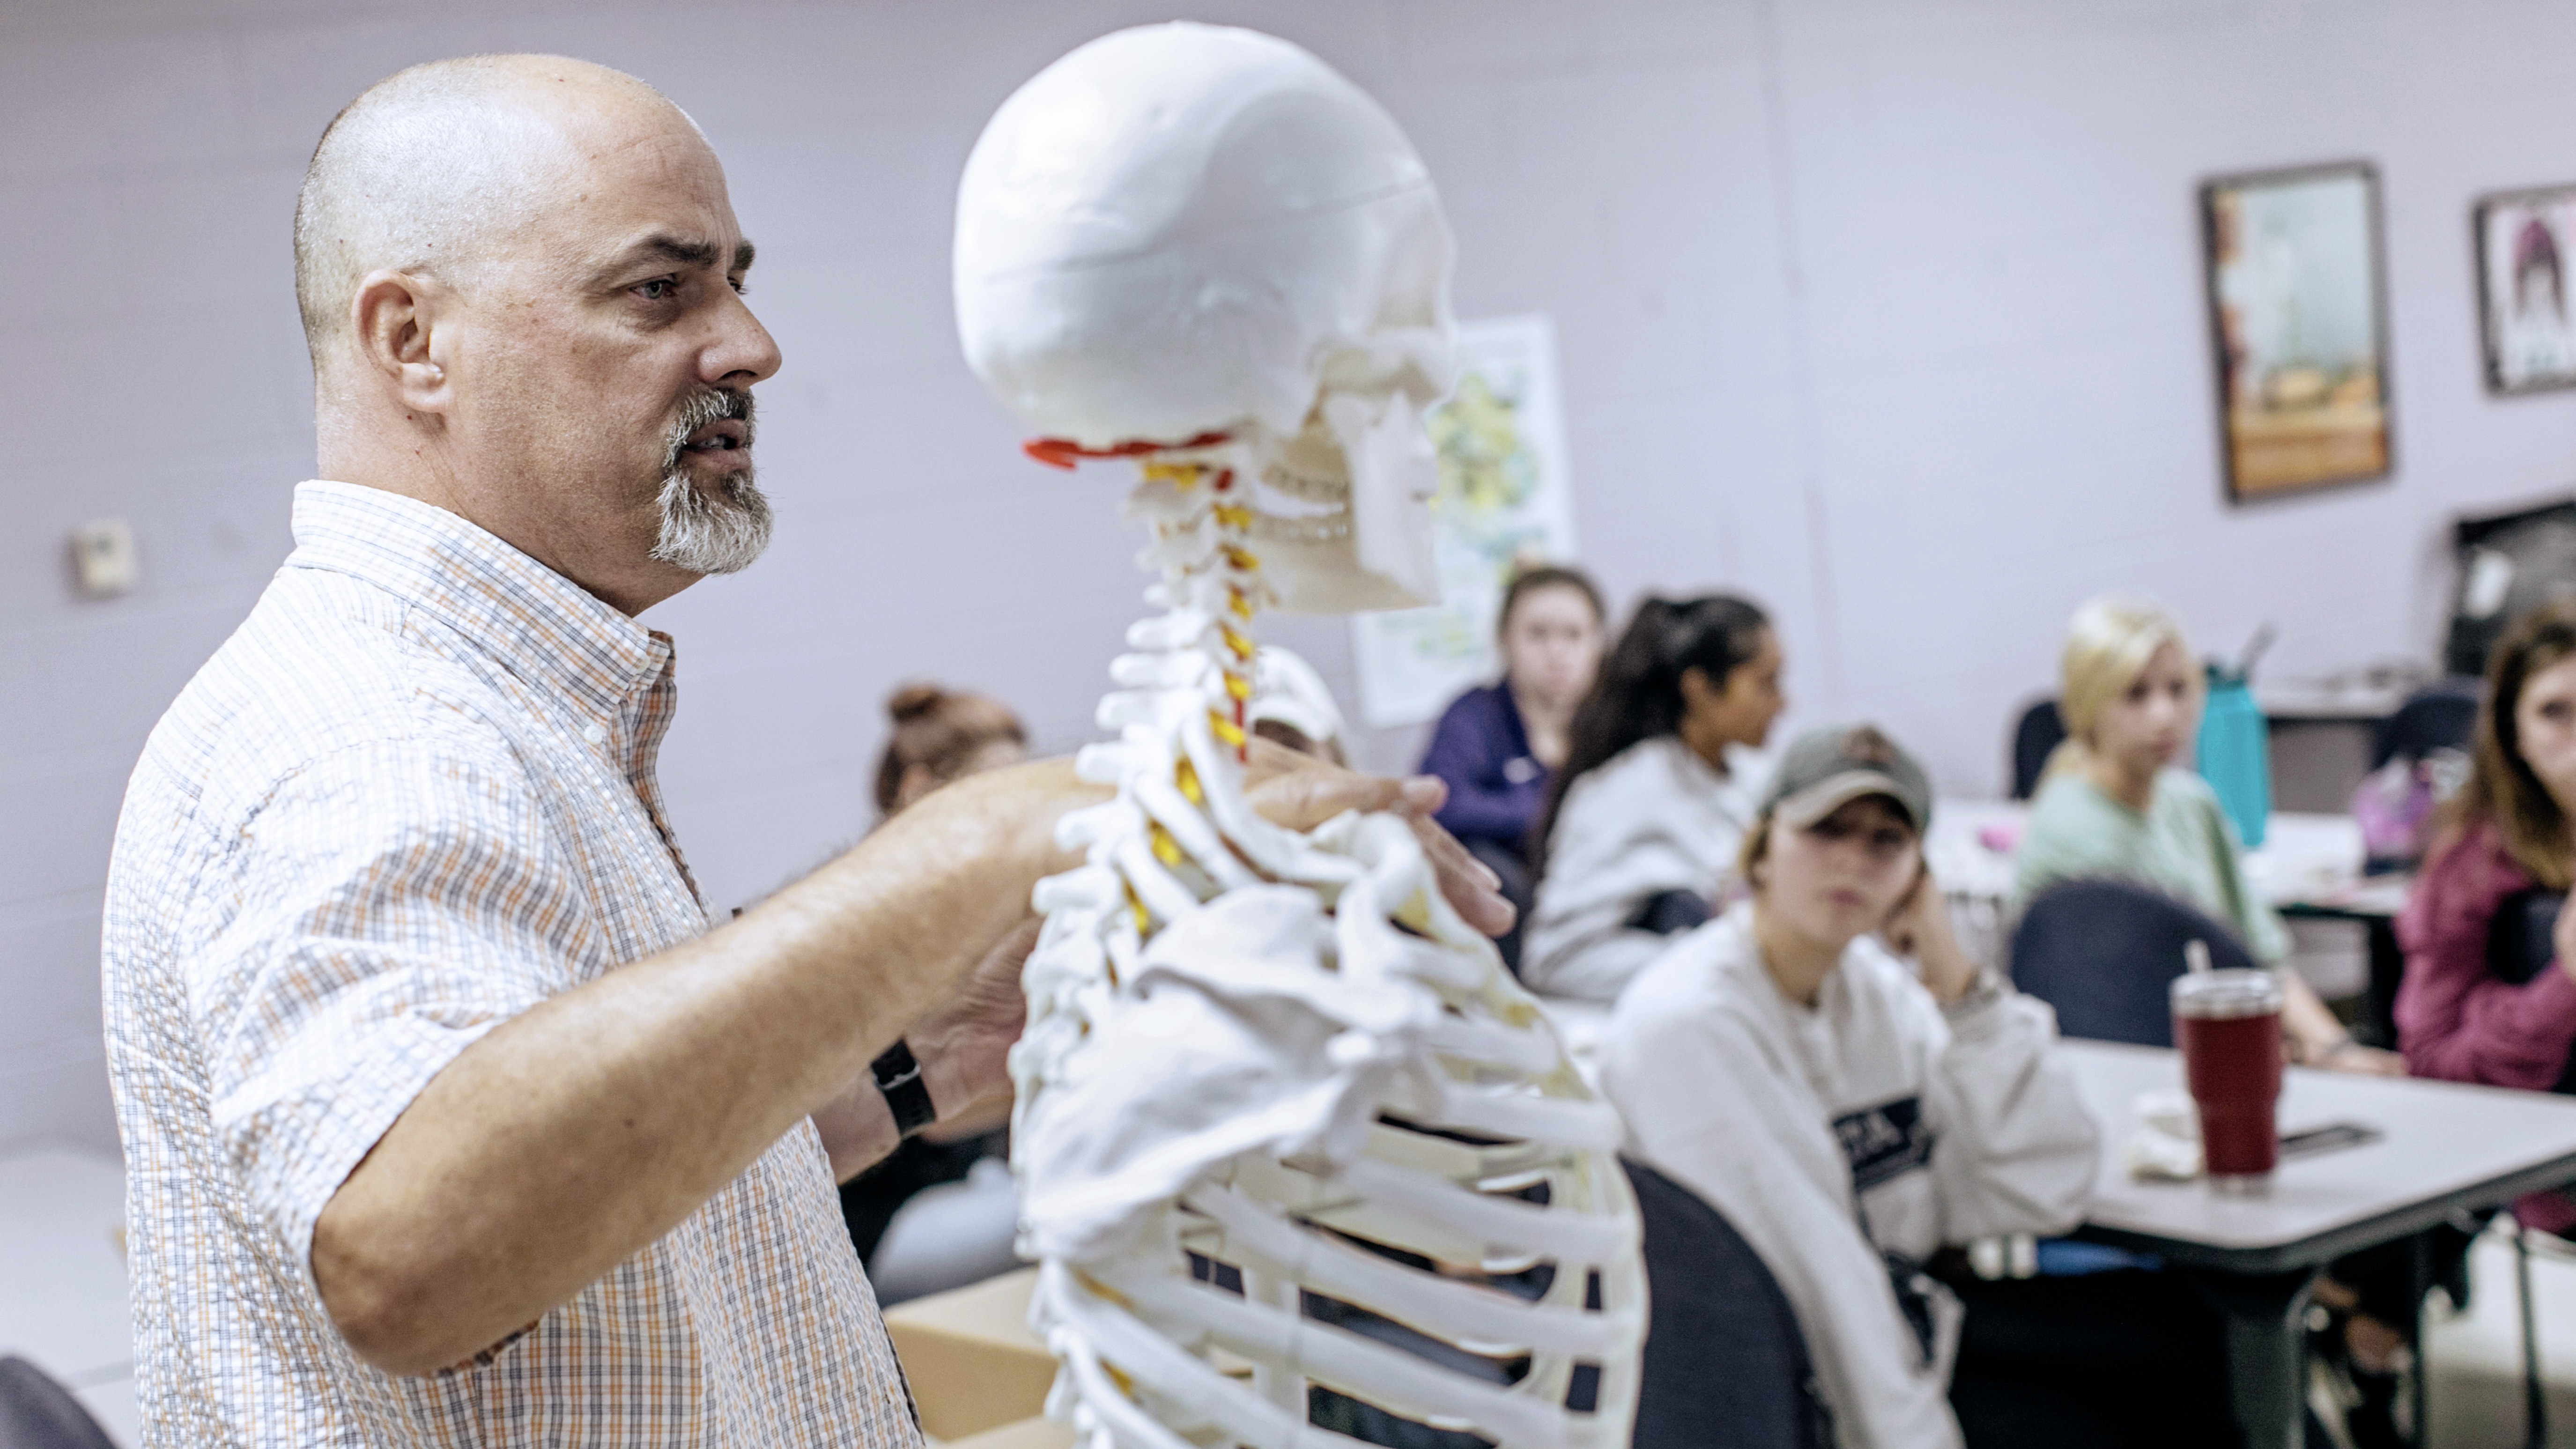 Dr. Terry DeWitt teaches a kinesiology class at Ouachita Baptist University